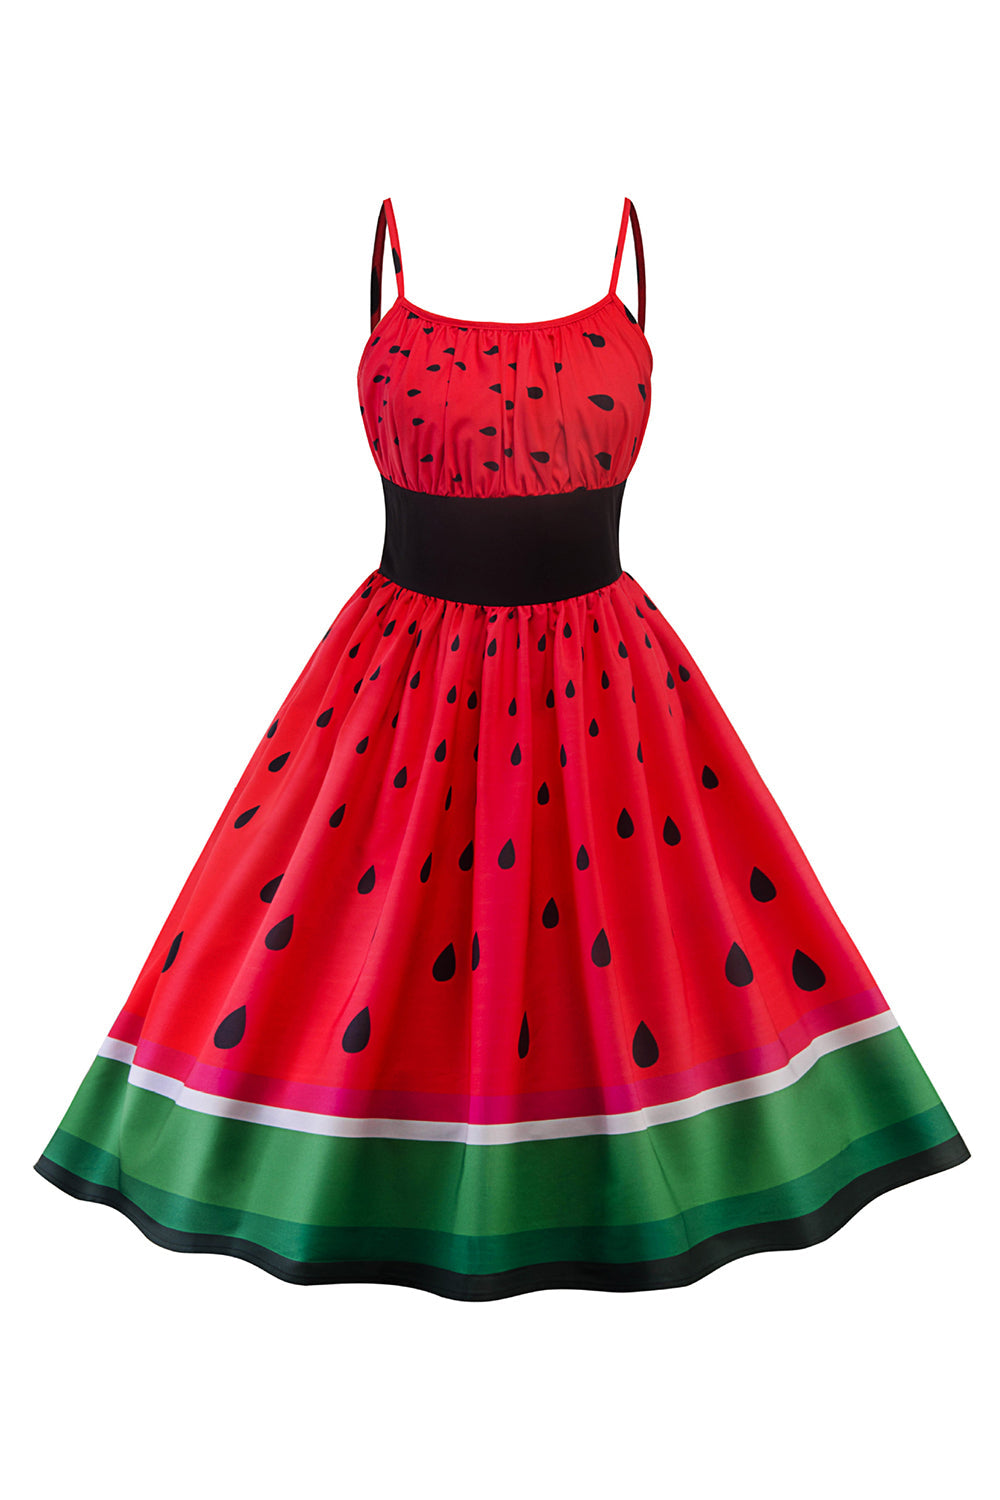 Rode watermeloen bedrukte vintage jaren 1950 jurk